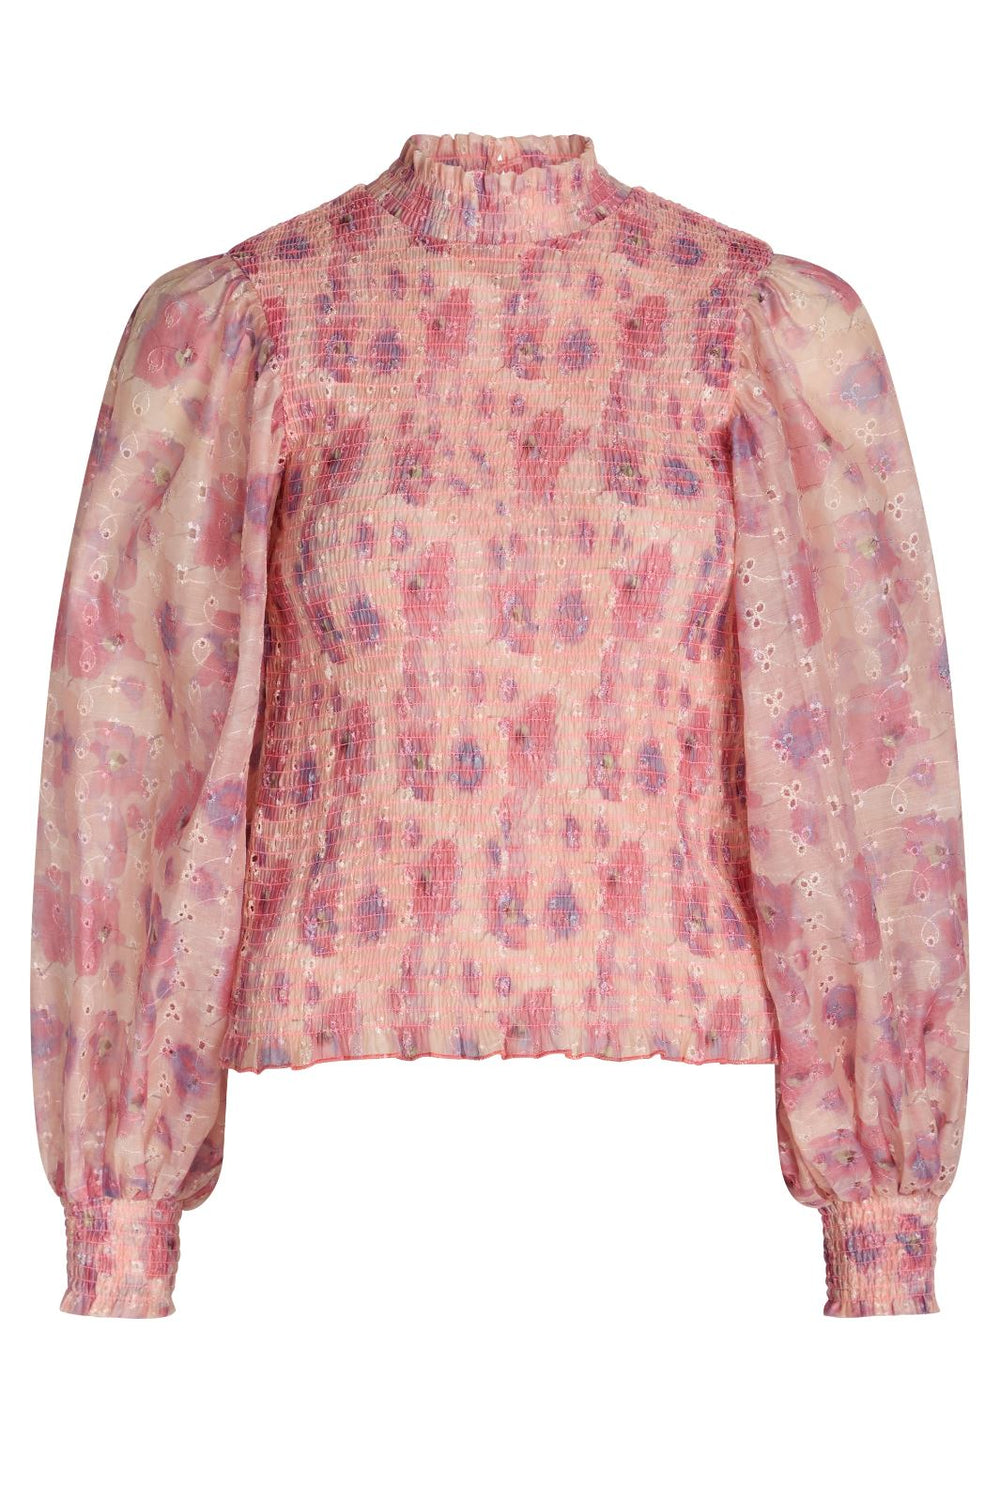 Bruuns Bazaar - Hyssop Silke blouse - Pink print Bluser 